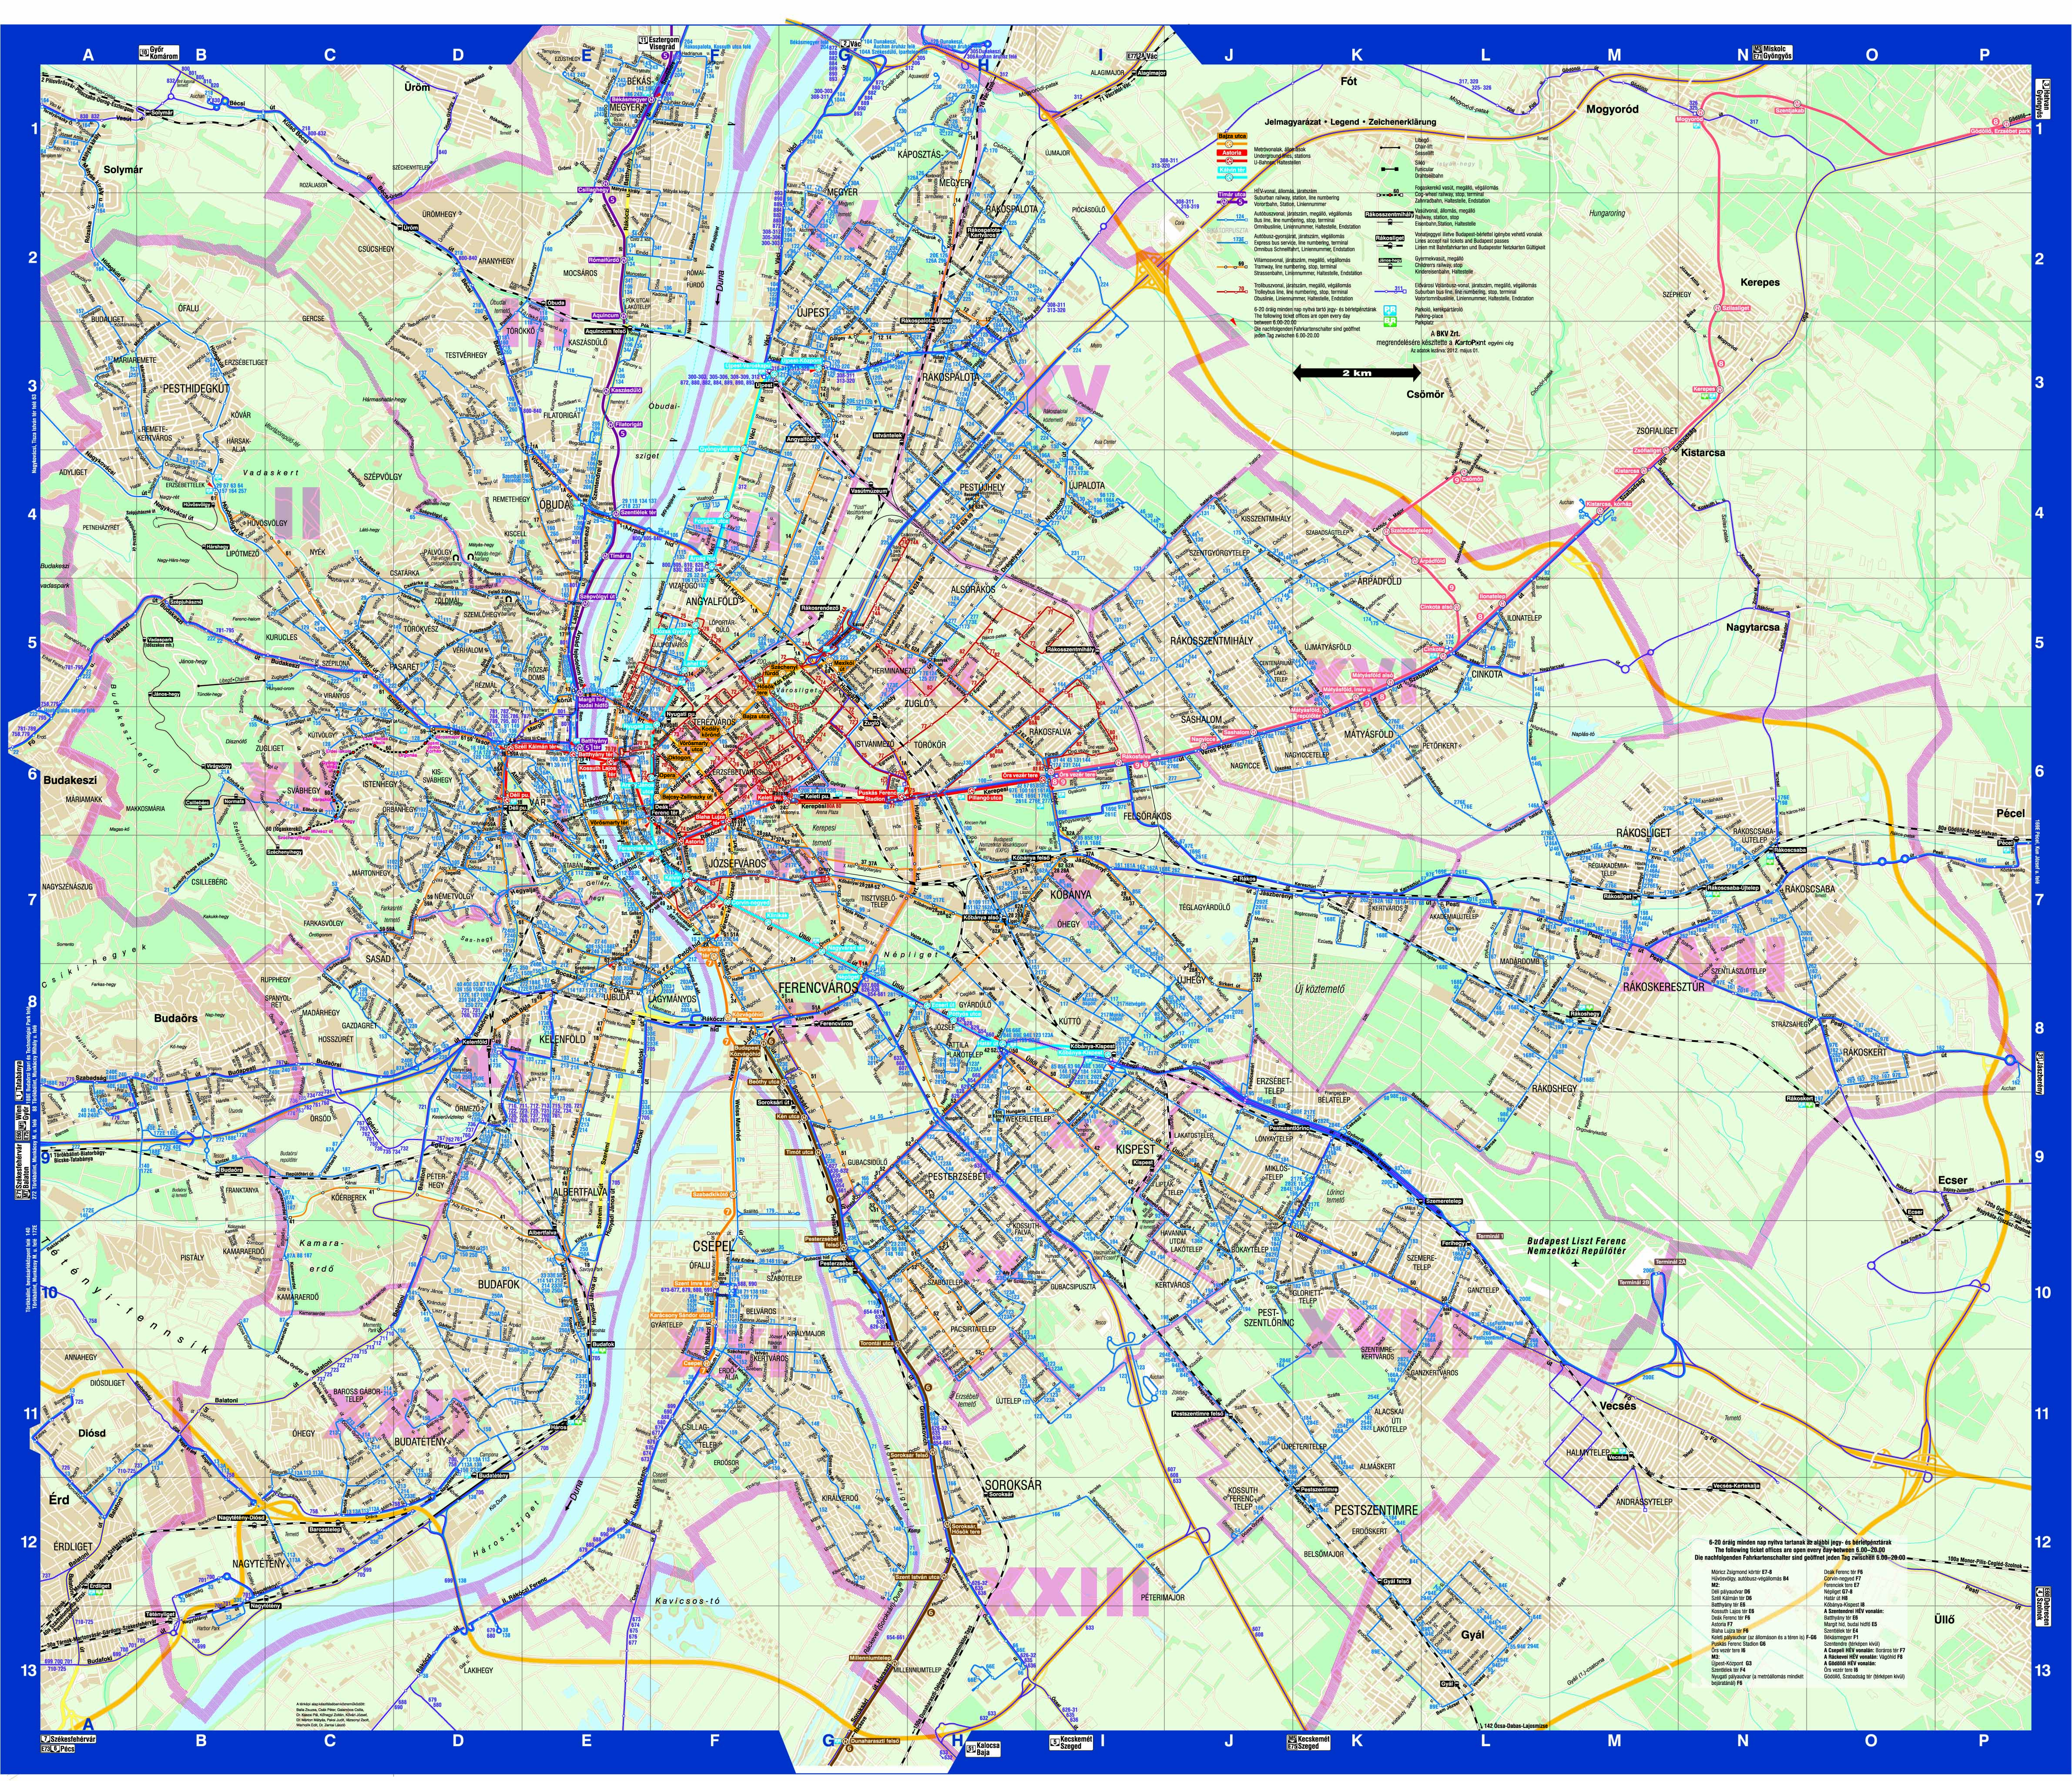 térkép budapest tömegközlekedés Agocs Robert_Diplomamunka1 térkép budapest tömegközlekedés